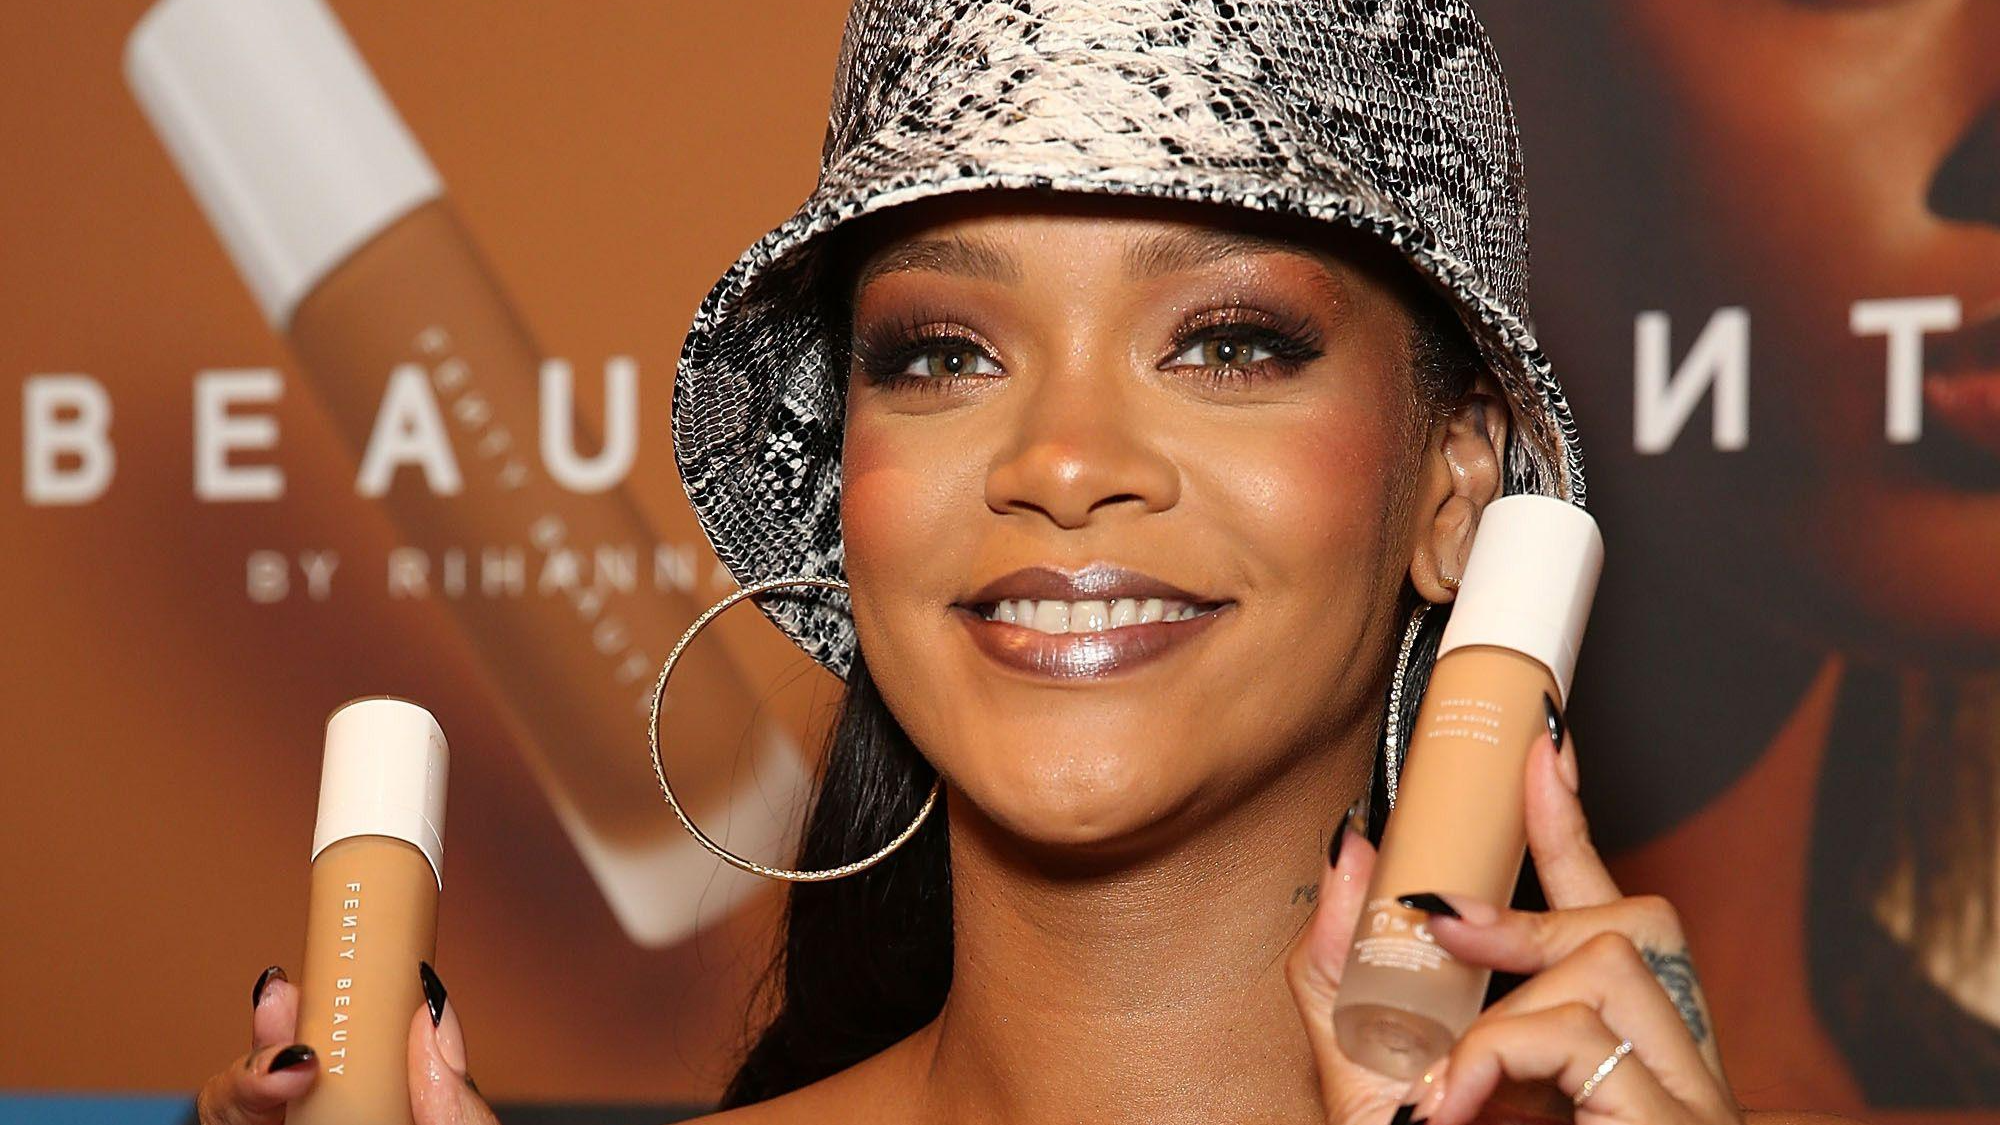 ca sĩ Rihanna đã chính thức gia nhập vào câu lạc bộ tỷ phú triệu đô